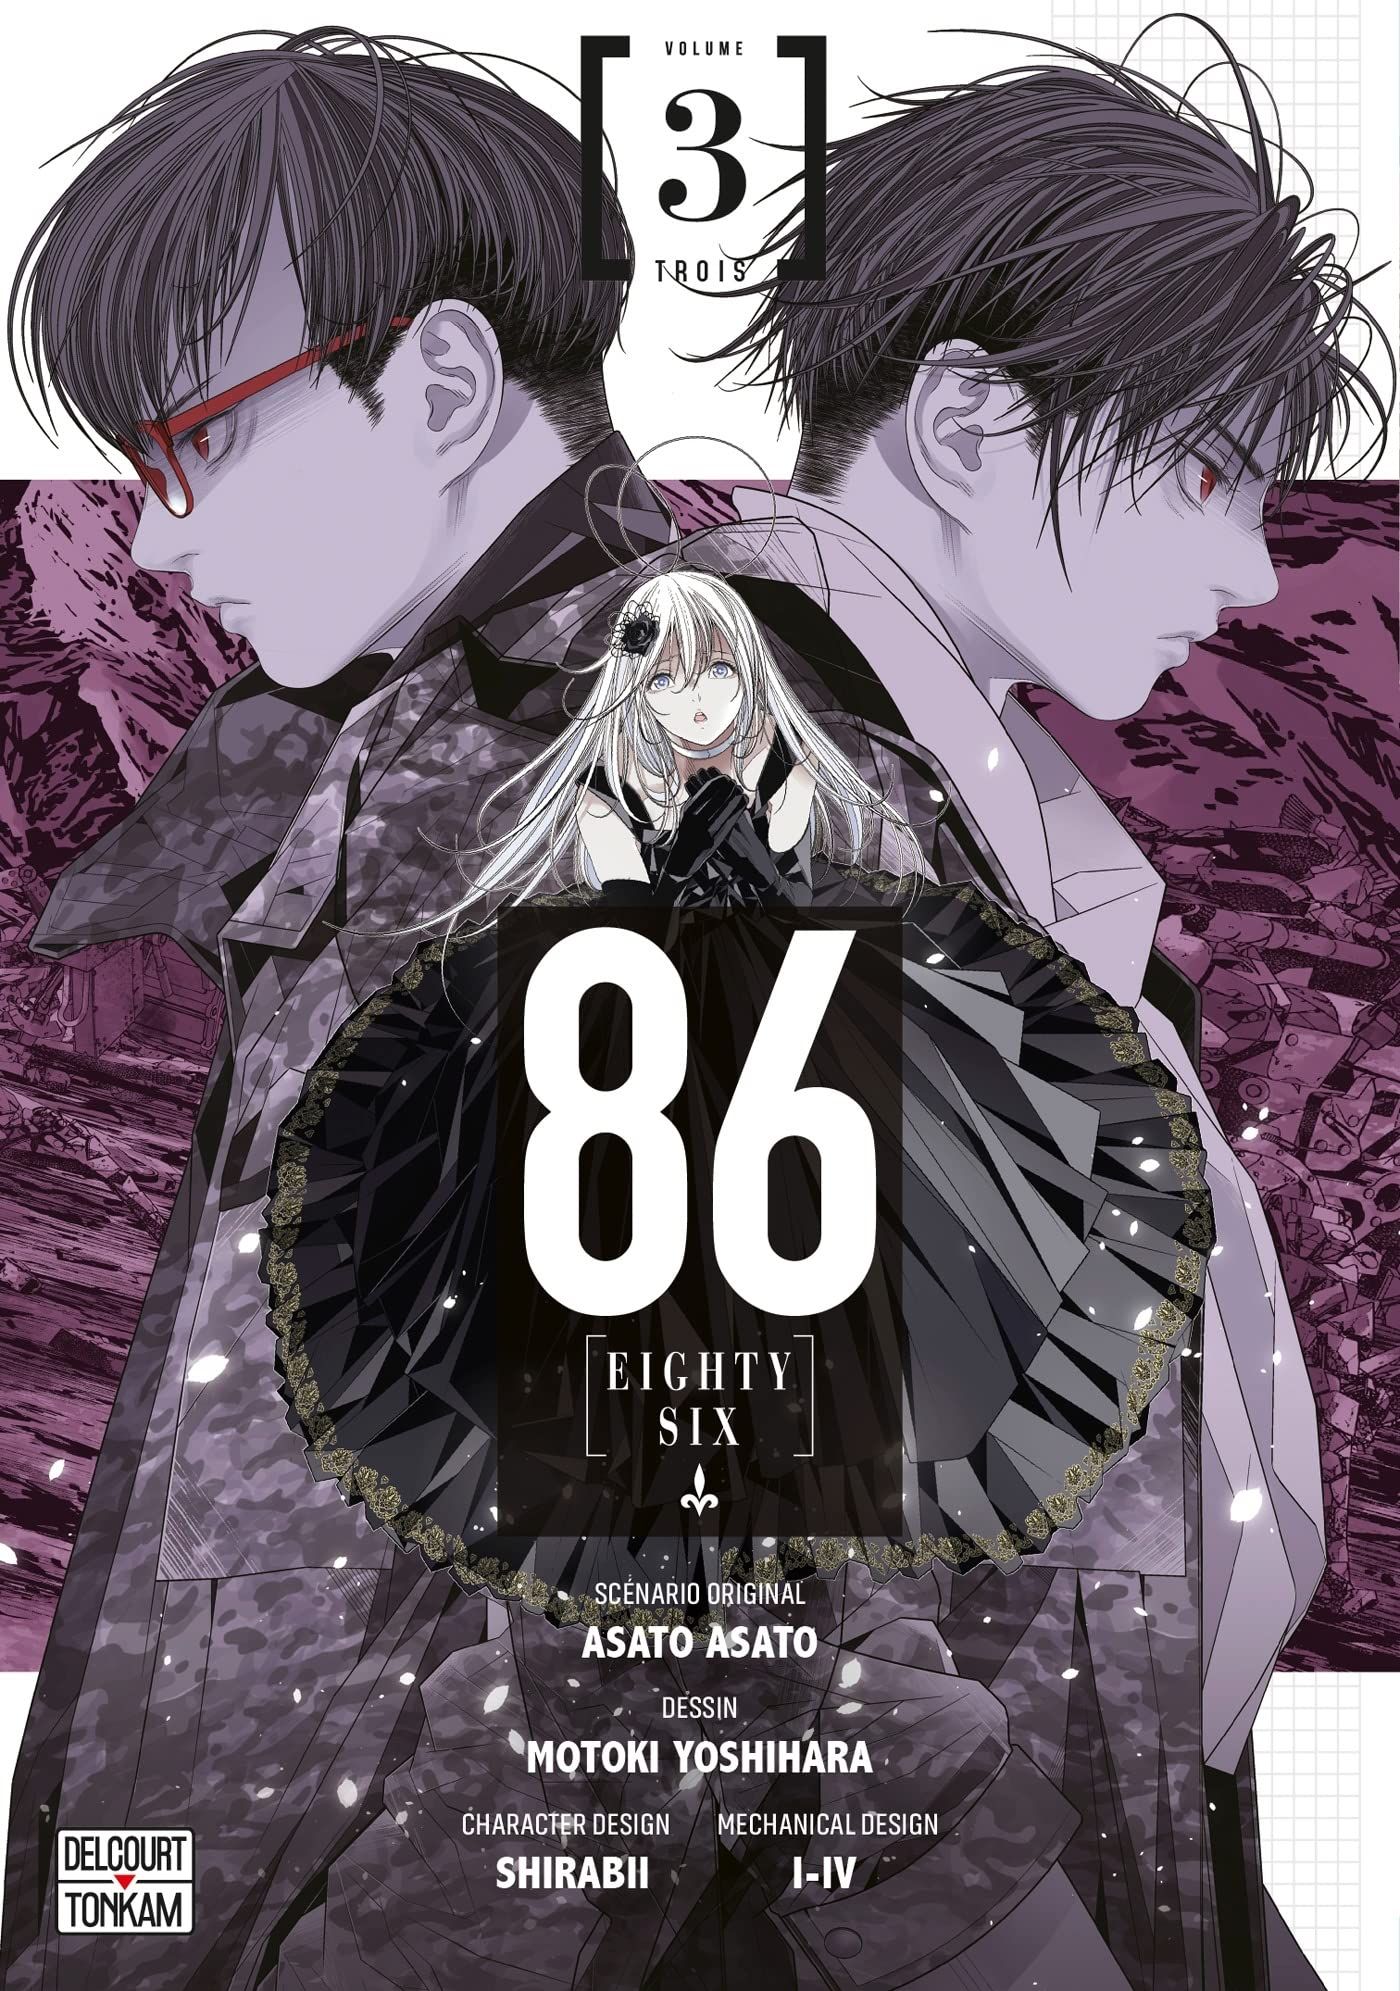 Manga - Manhwa - 86 Eighty Six Vol.3